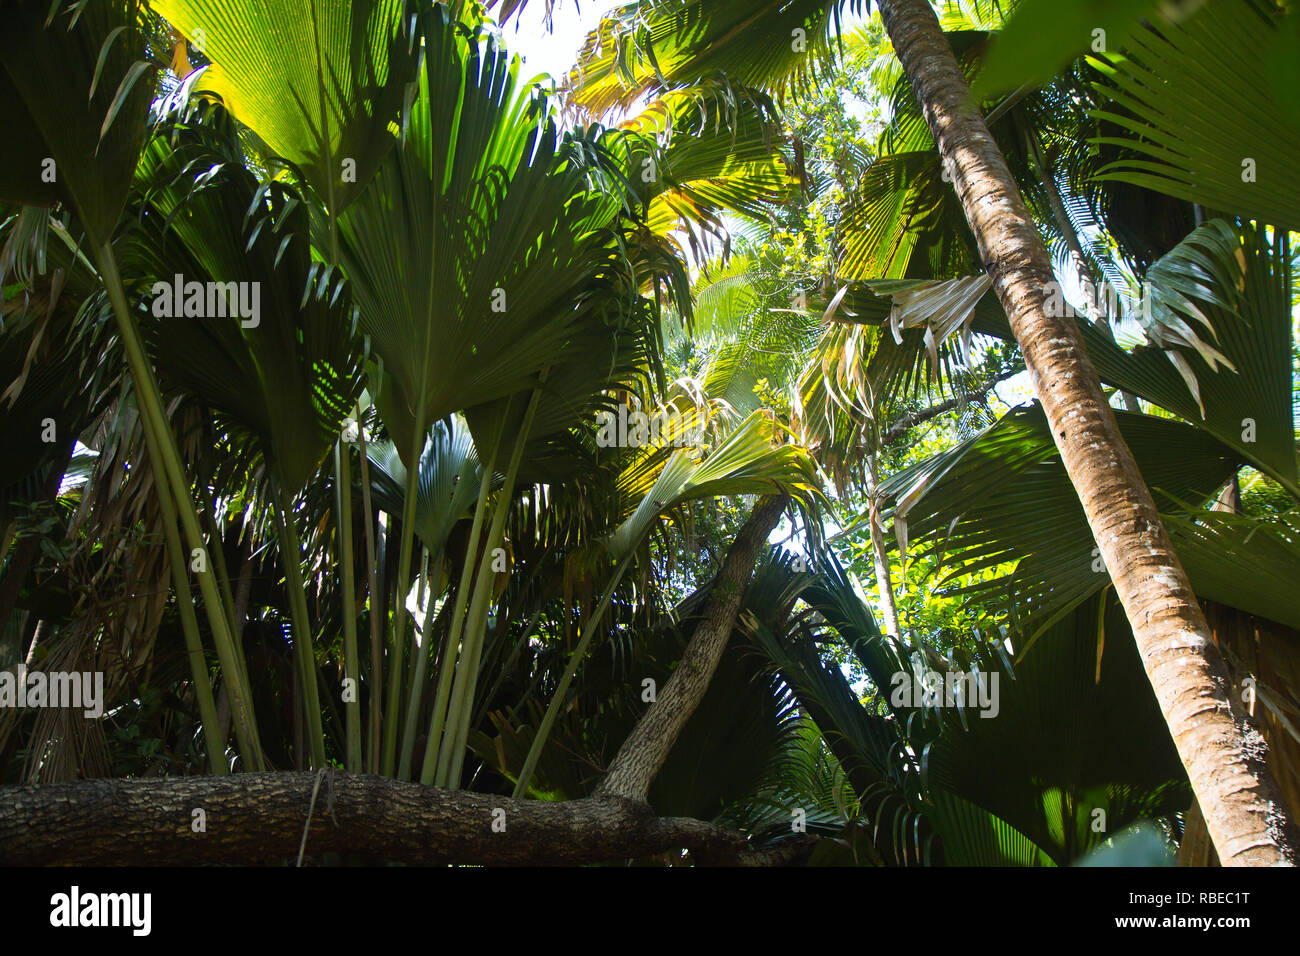 L'écrou et arbre de la coco de mer, une espèce de palmier originaire de l'archipel des Seychelles dans l'Océan Indien. Banque D'Images